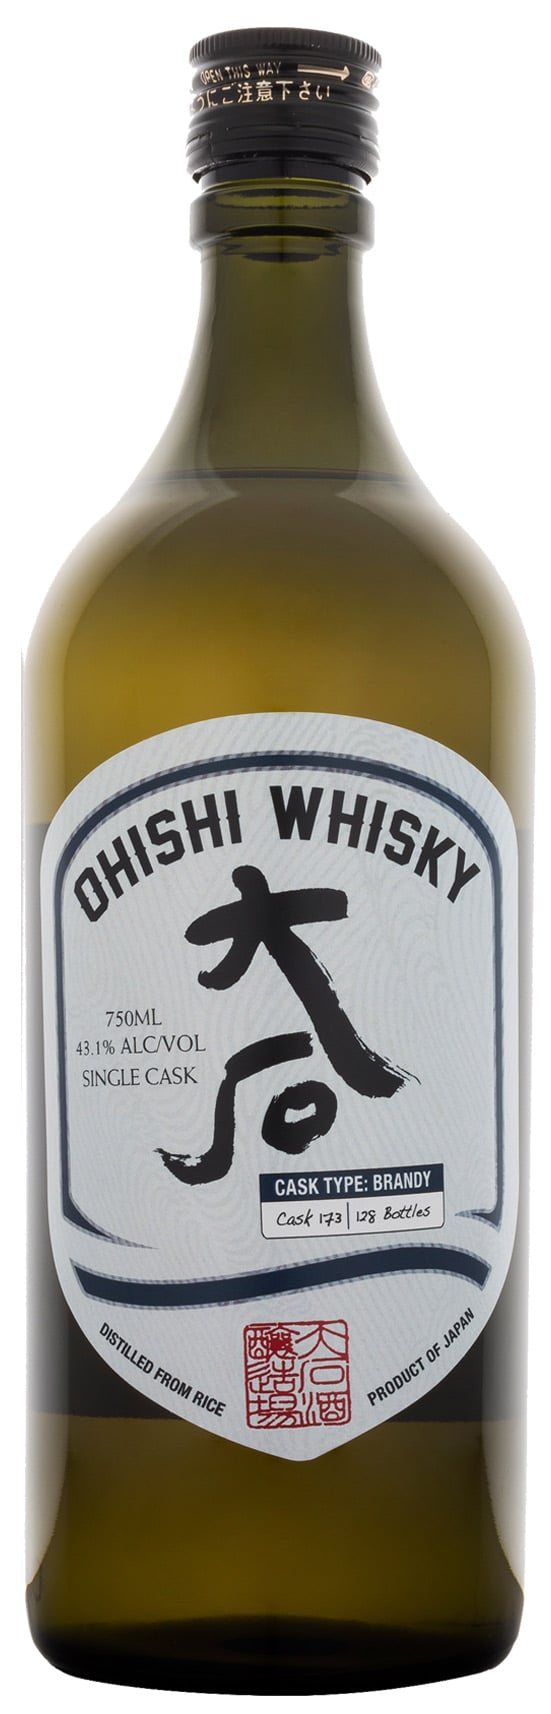 Ohishi Brandy Single Cask Whisky